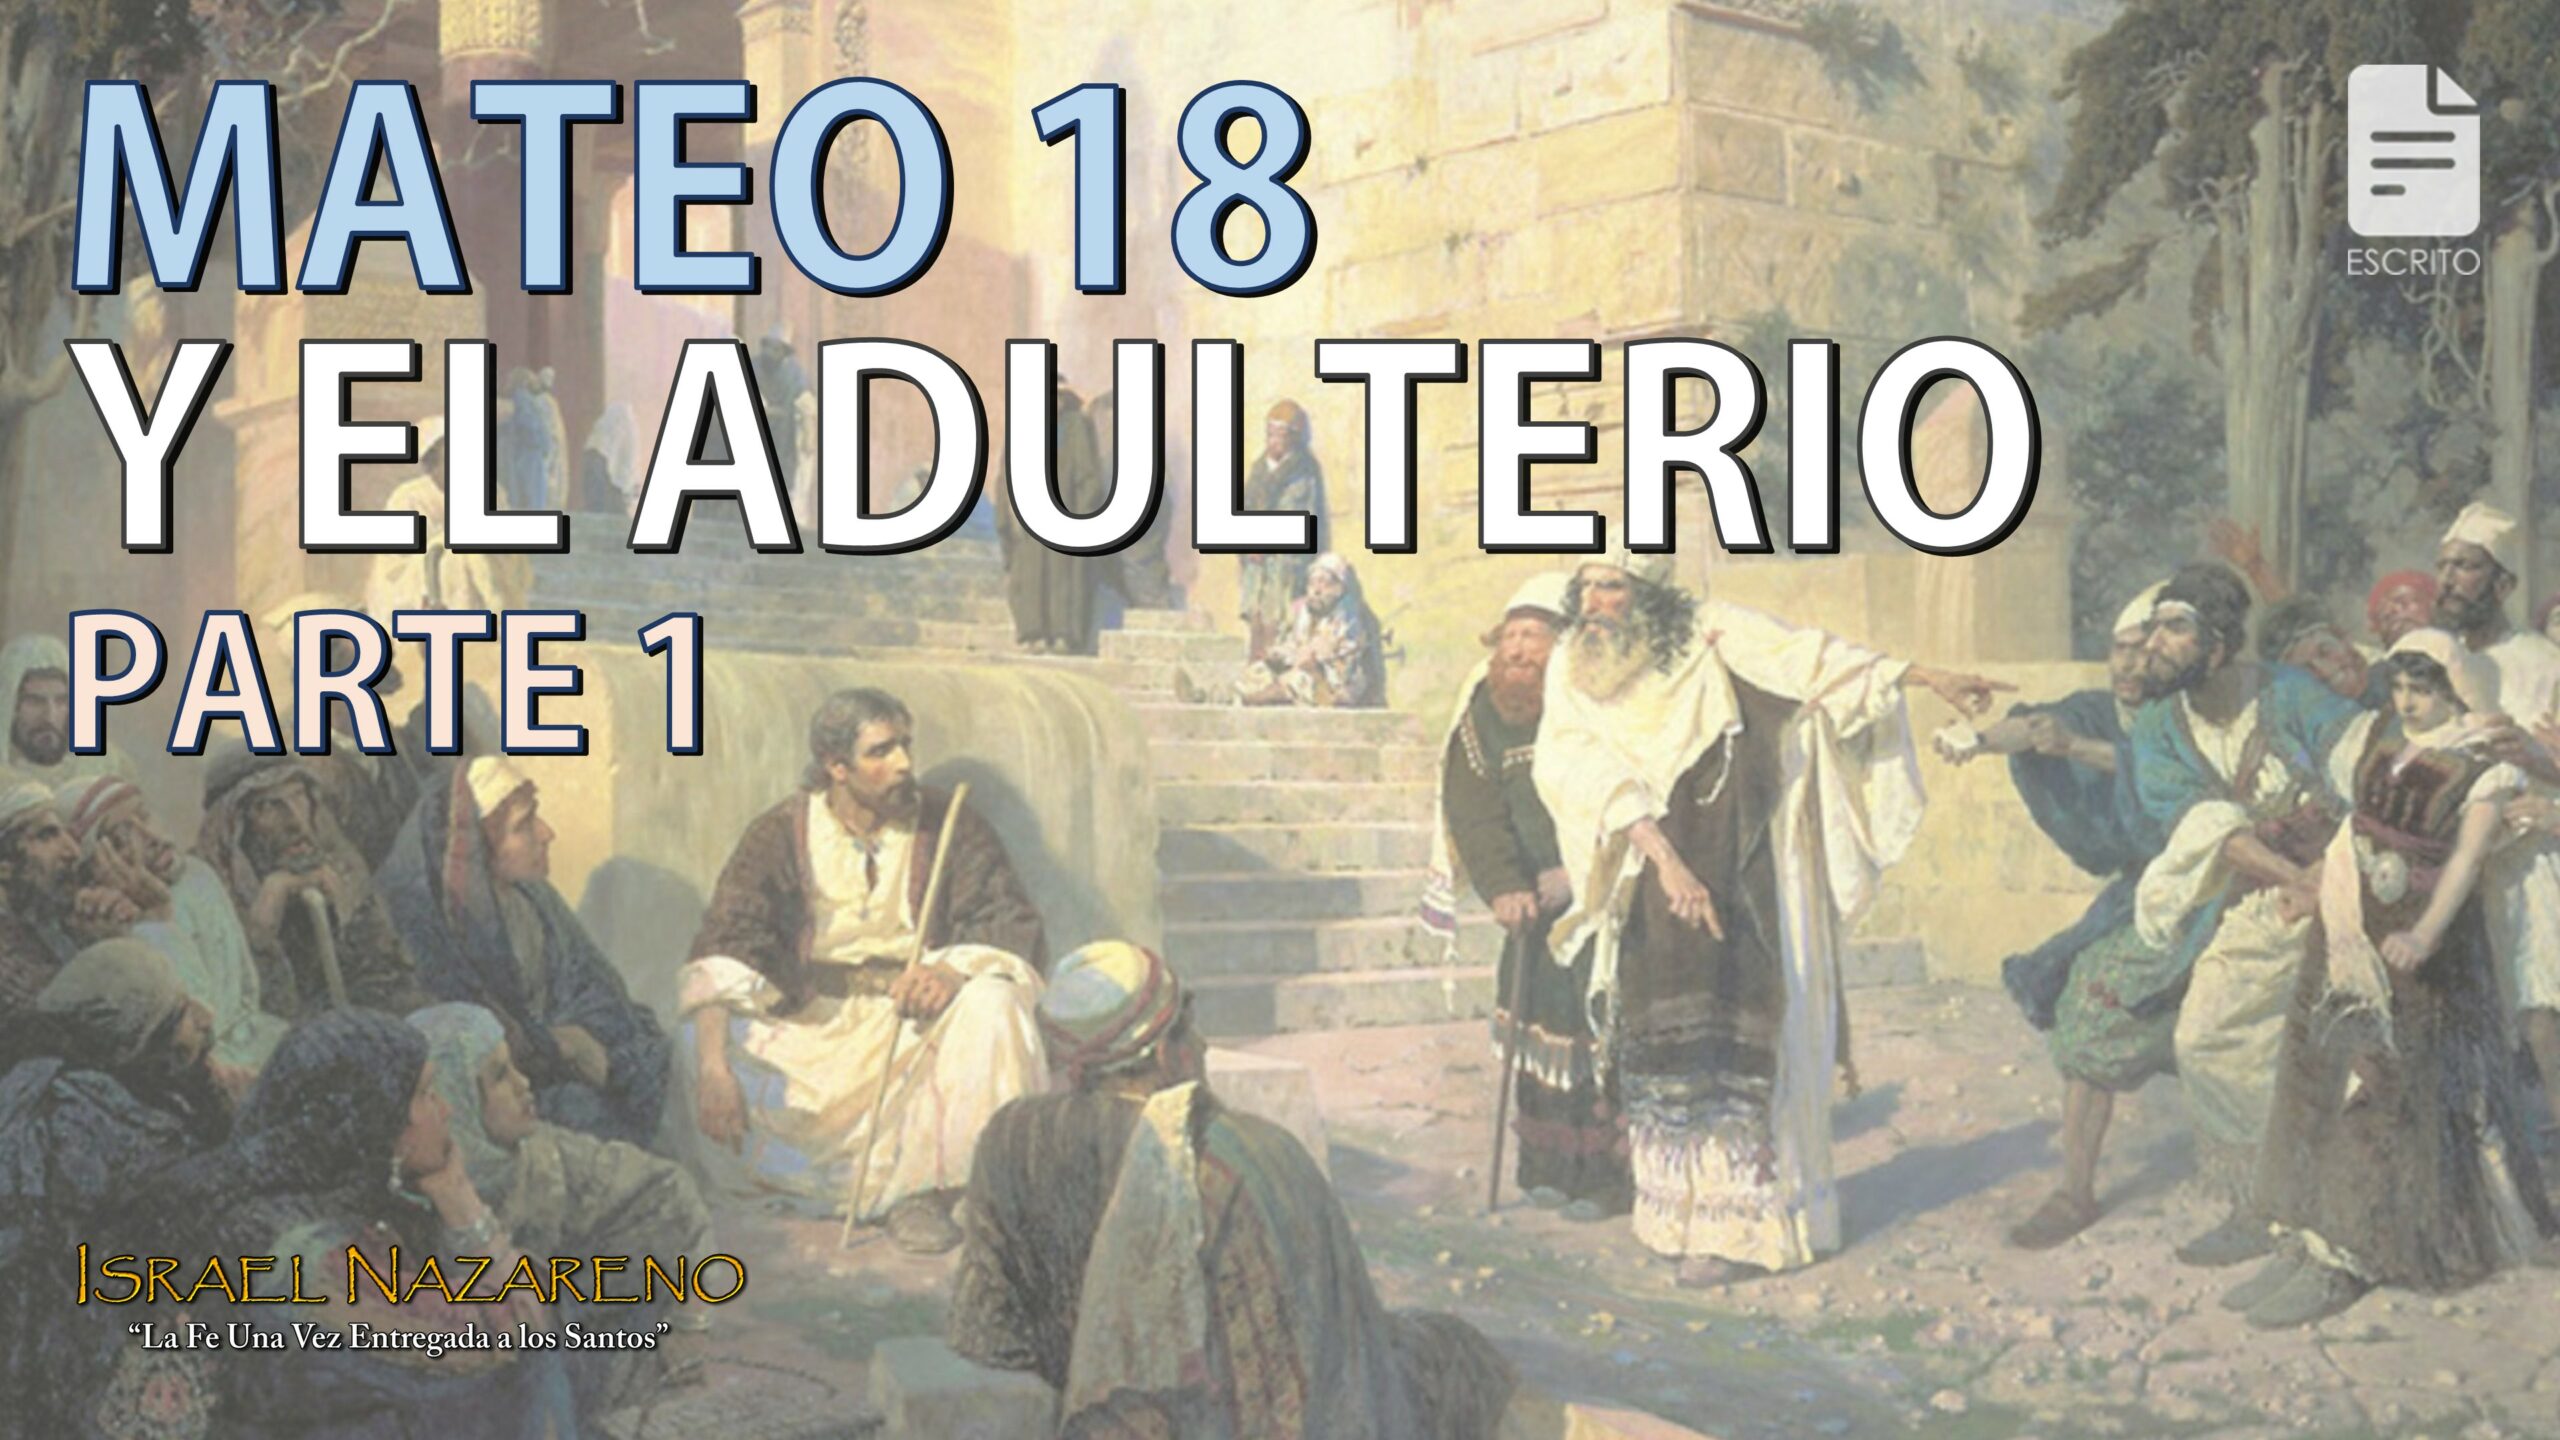 Mateo 18 y el adulterio: Parte 1